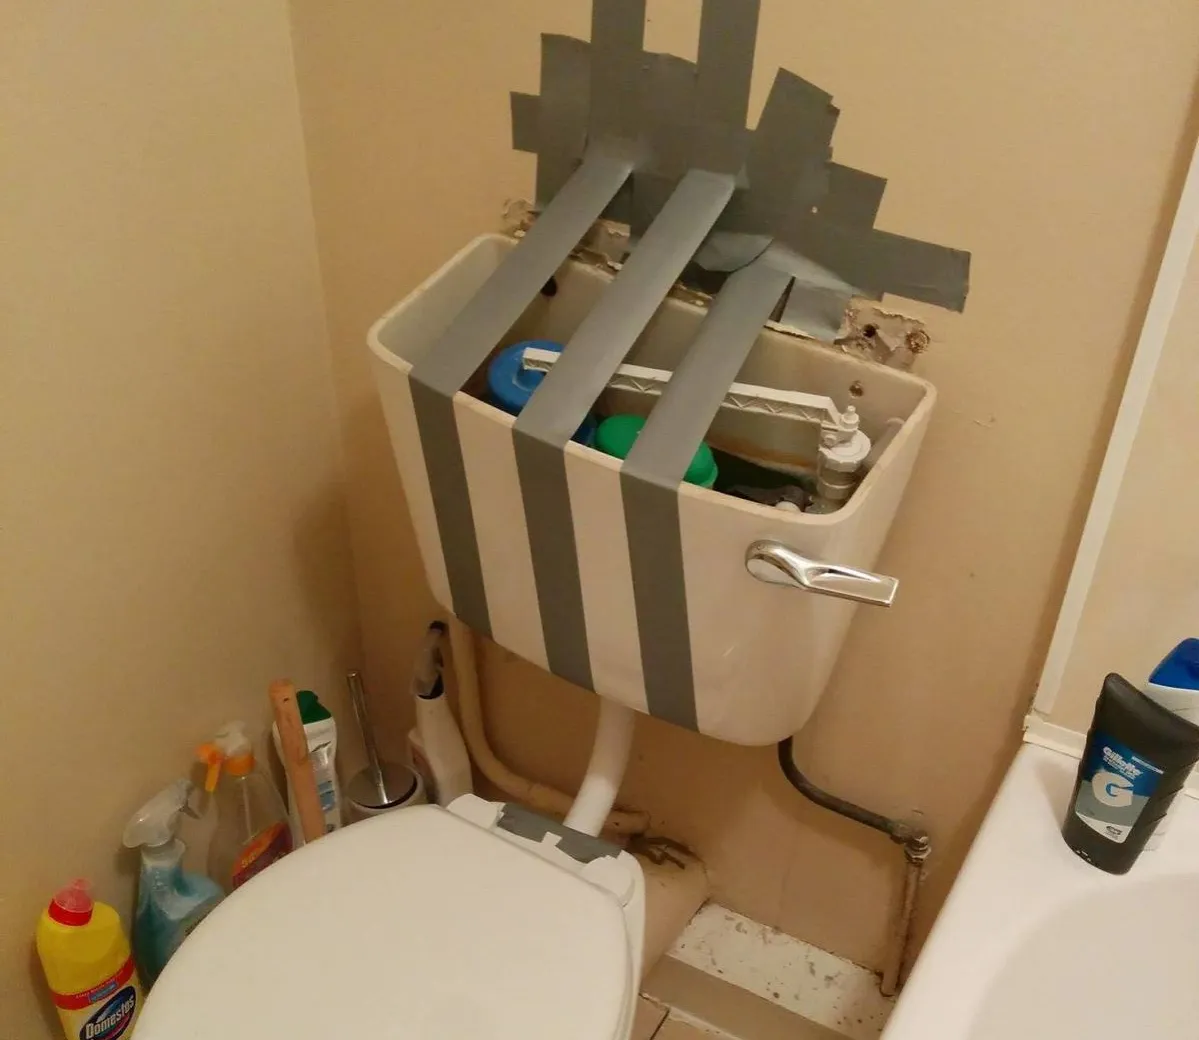 duct tape toilet repairman